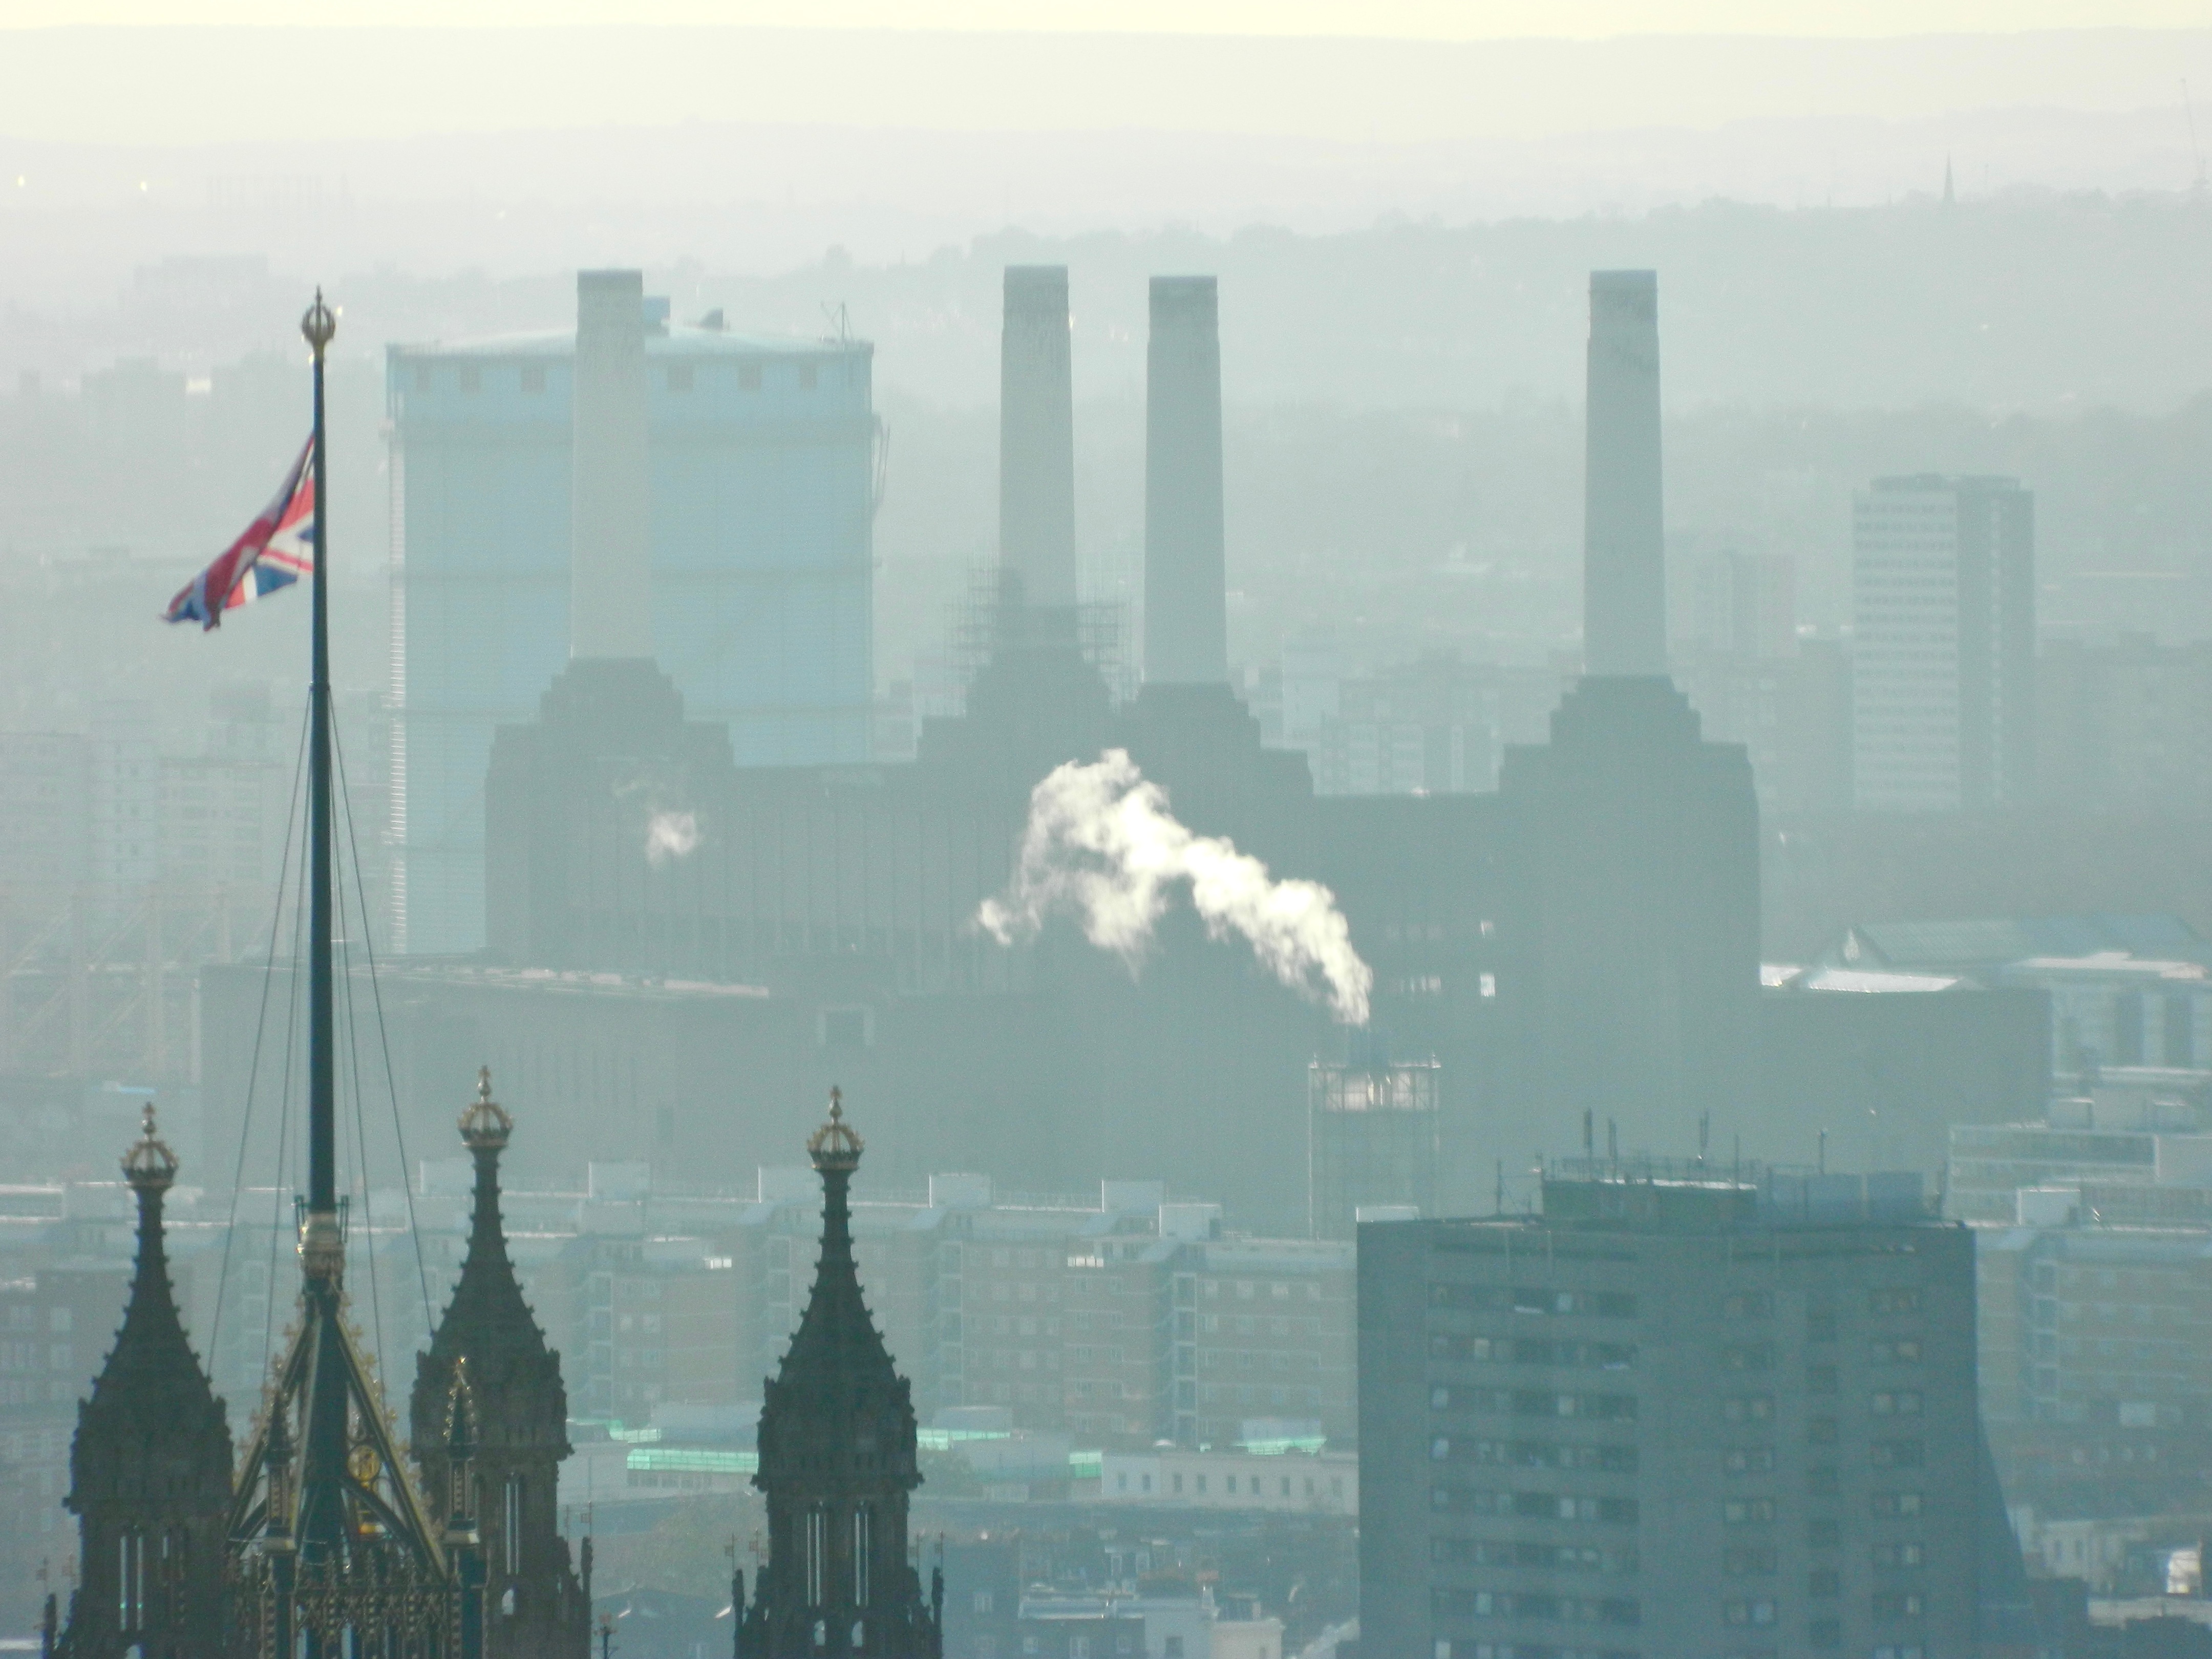 London skyline shrouded in smog